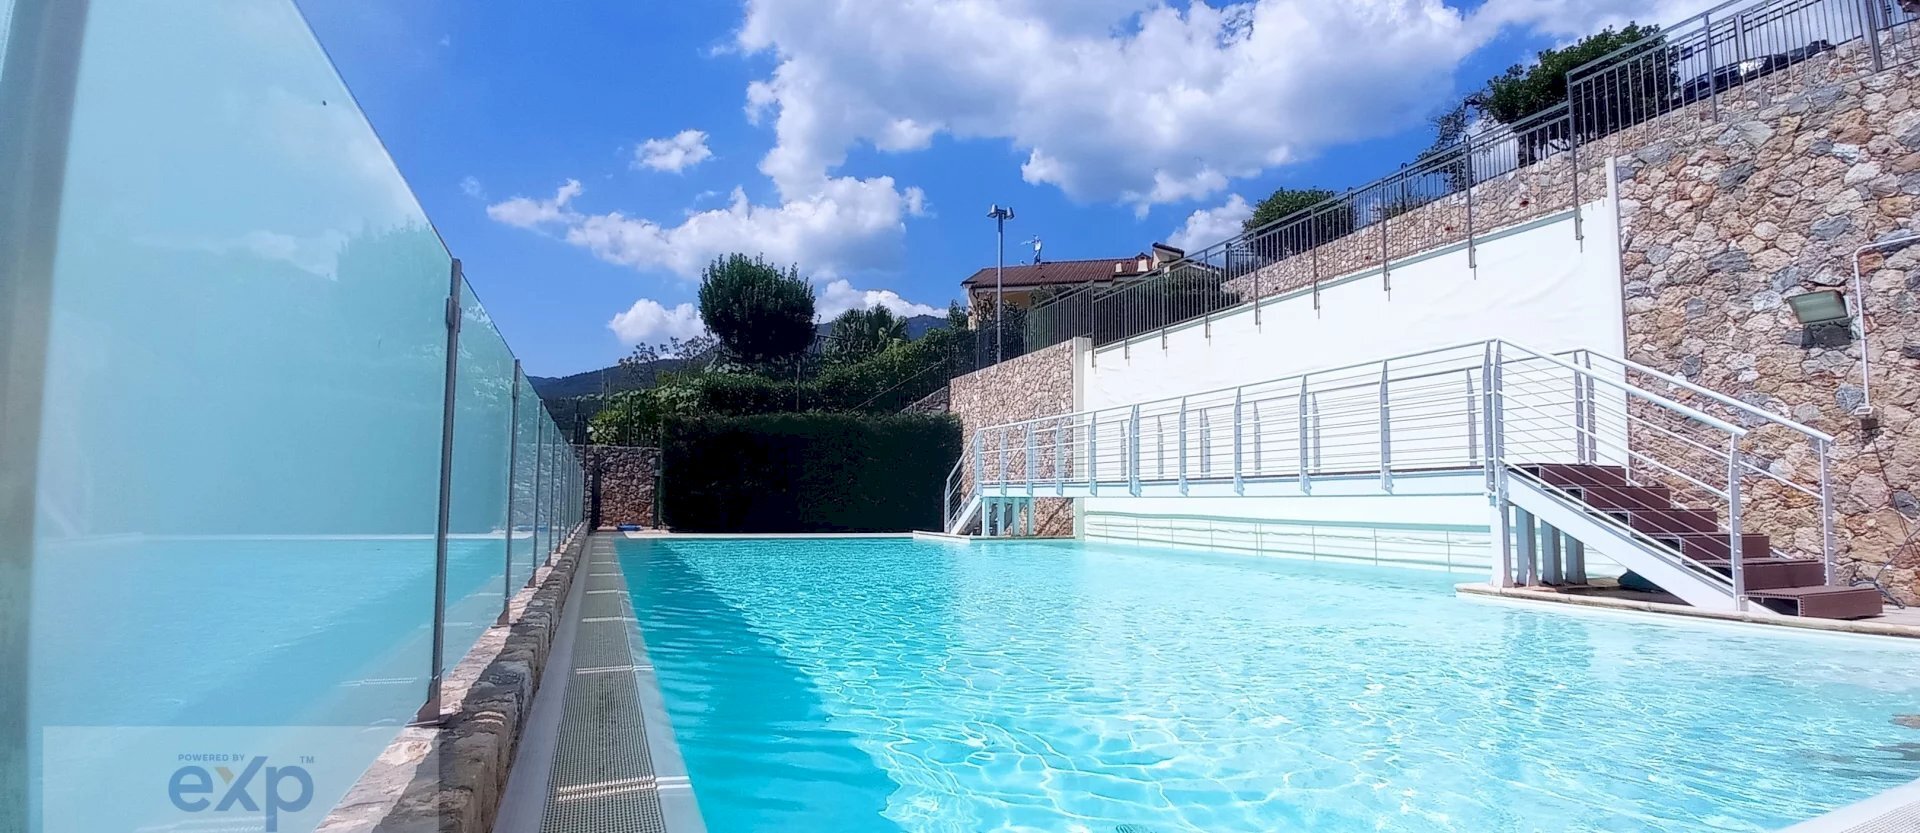 Vista mare, 2 piscine, spa nel cuore verde della Liguria !